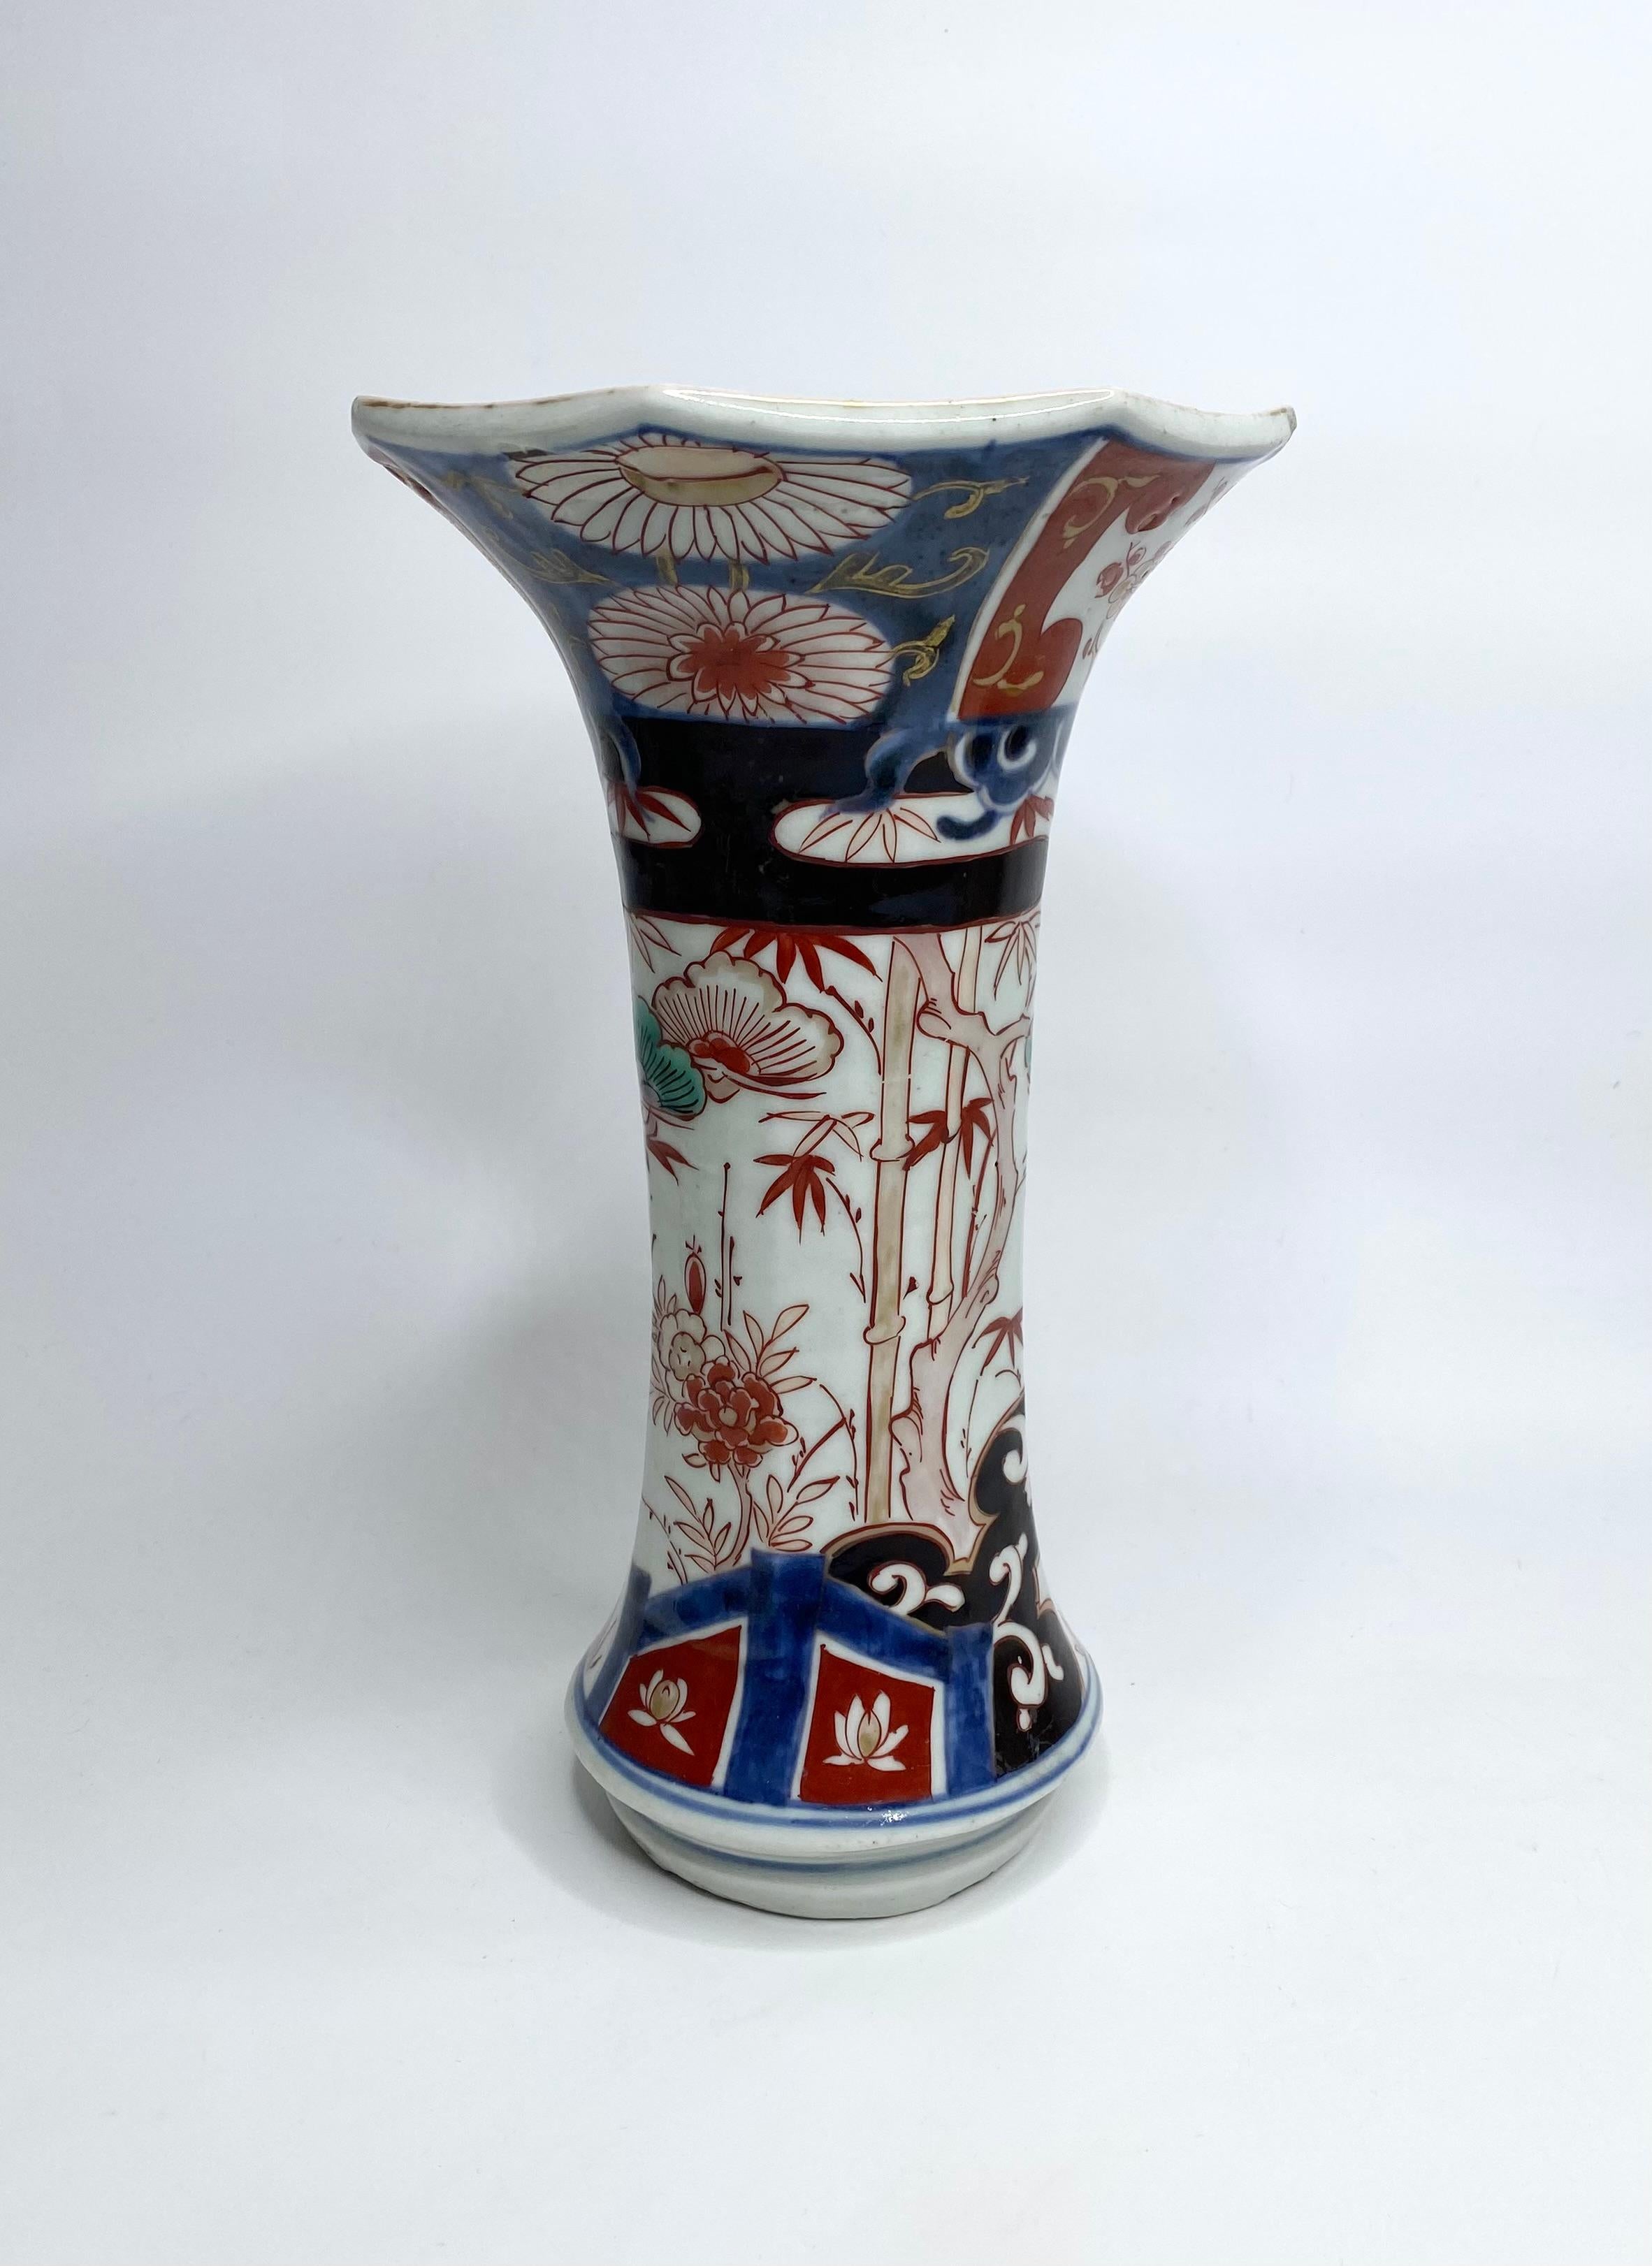 Pair Imari porcelain vases, Arita, Japan, c. 1700. Genryoku Period. 2